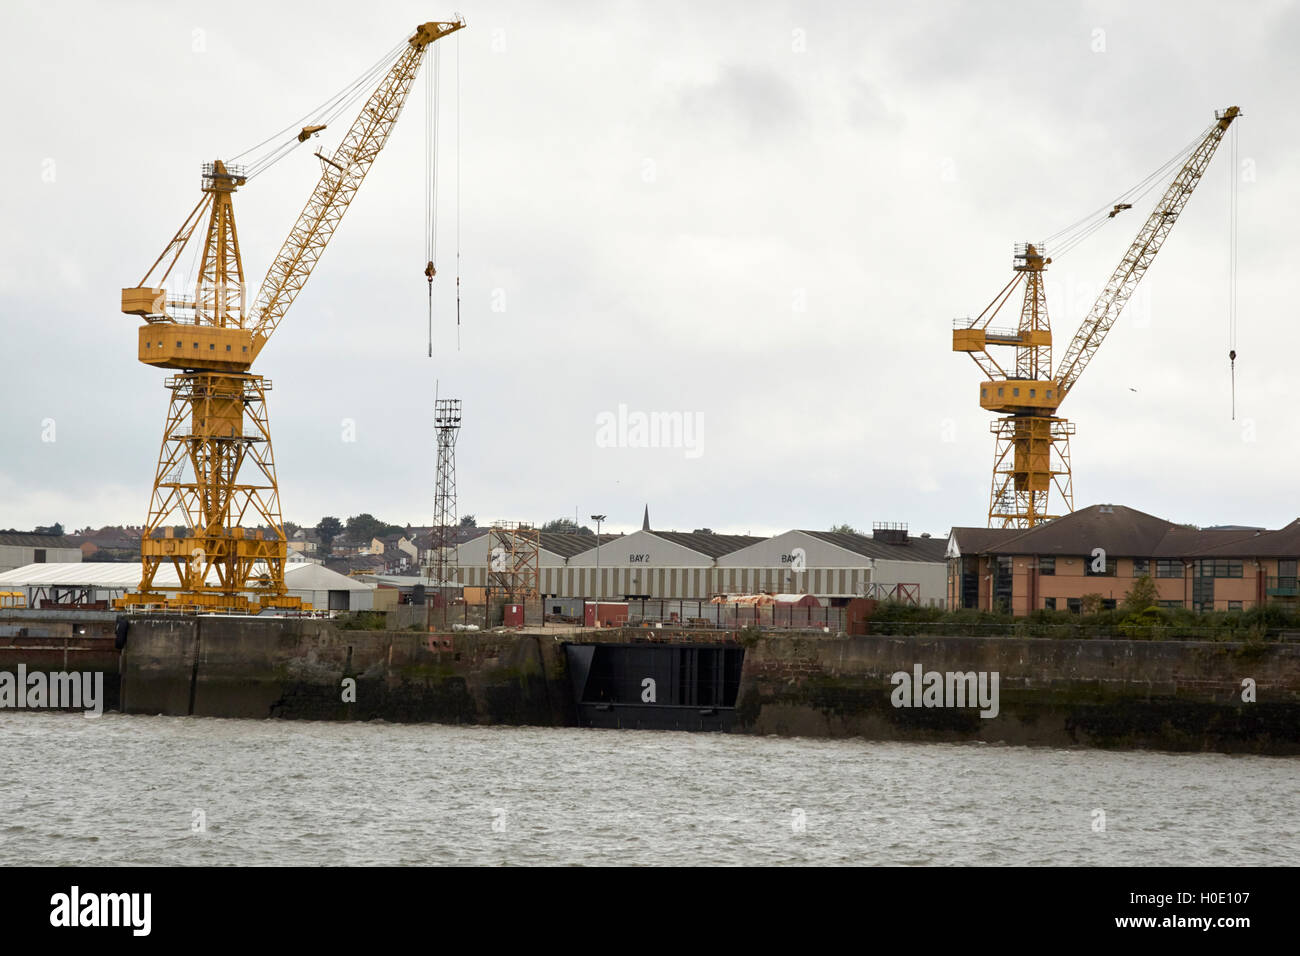 Les grues de chantier naval Cammell Laird birkenhead liverpooll Merseyside UK Banque D'Images